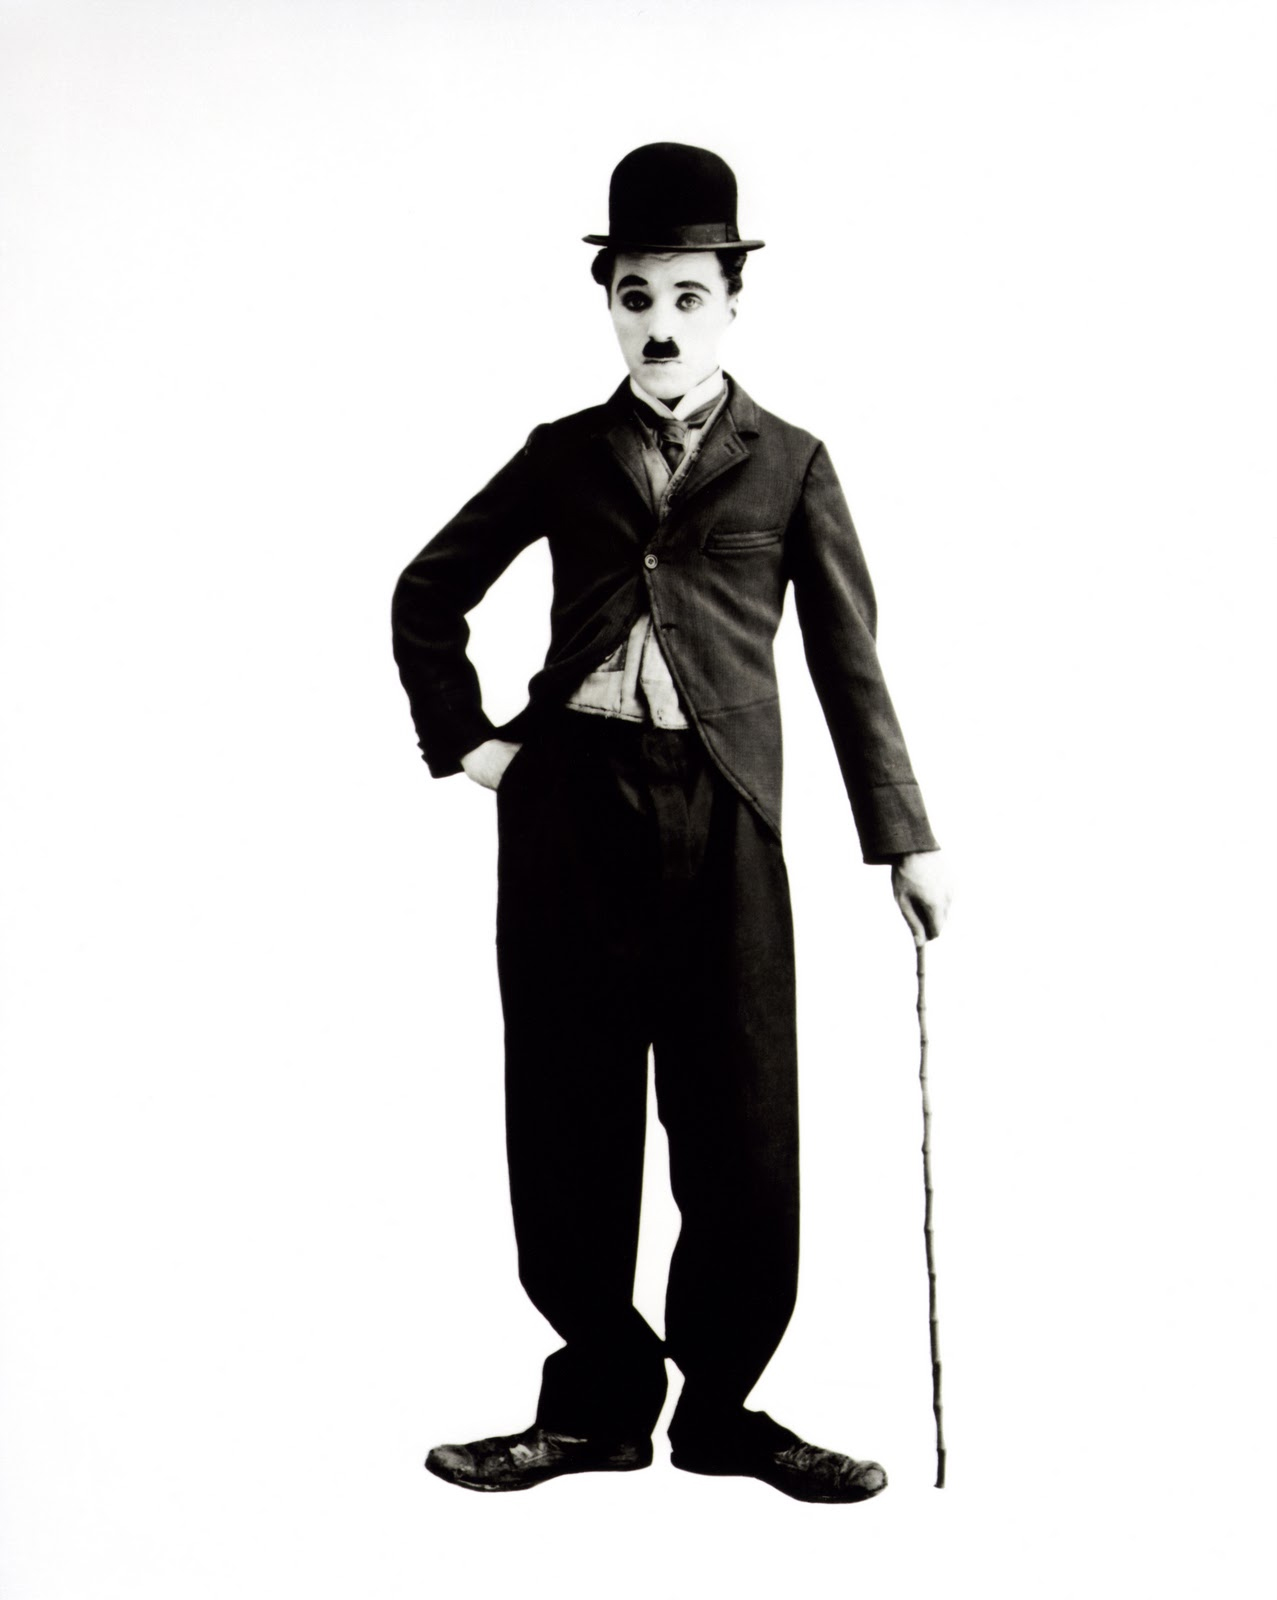 http://2.bp.blogspot.com/-zpO-wJ8xgvI/T2L-S6F-ObI/AAAAAAAAA10/v8KZOO3yZzM/s1600/Charlie+Chaplin.jpg